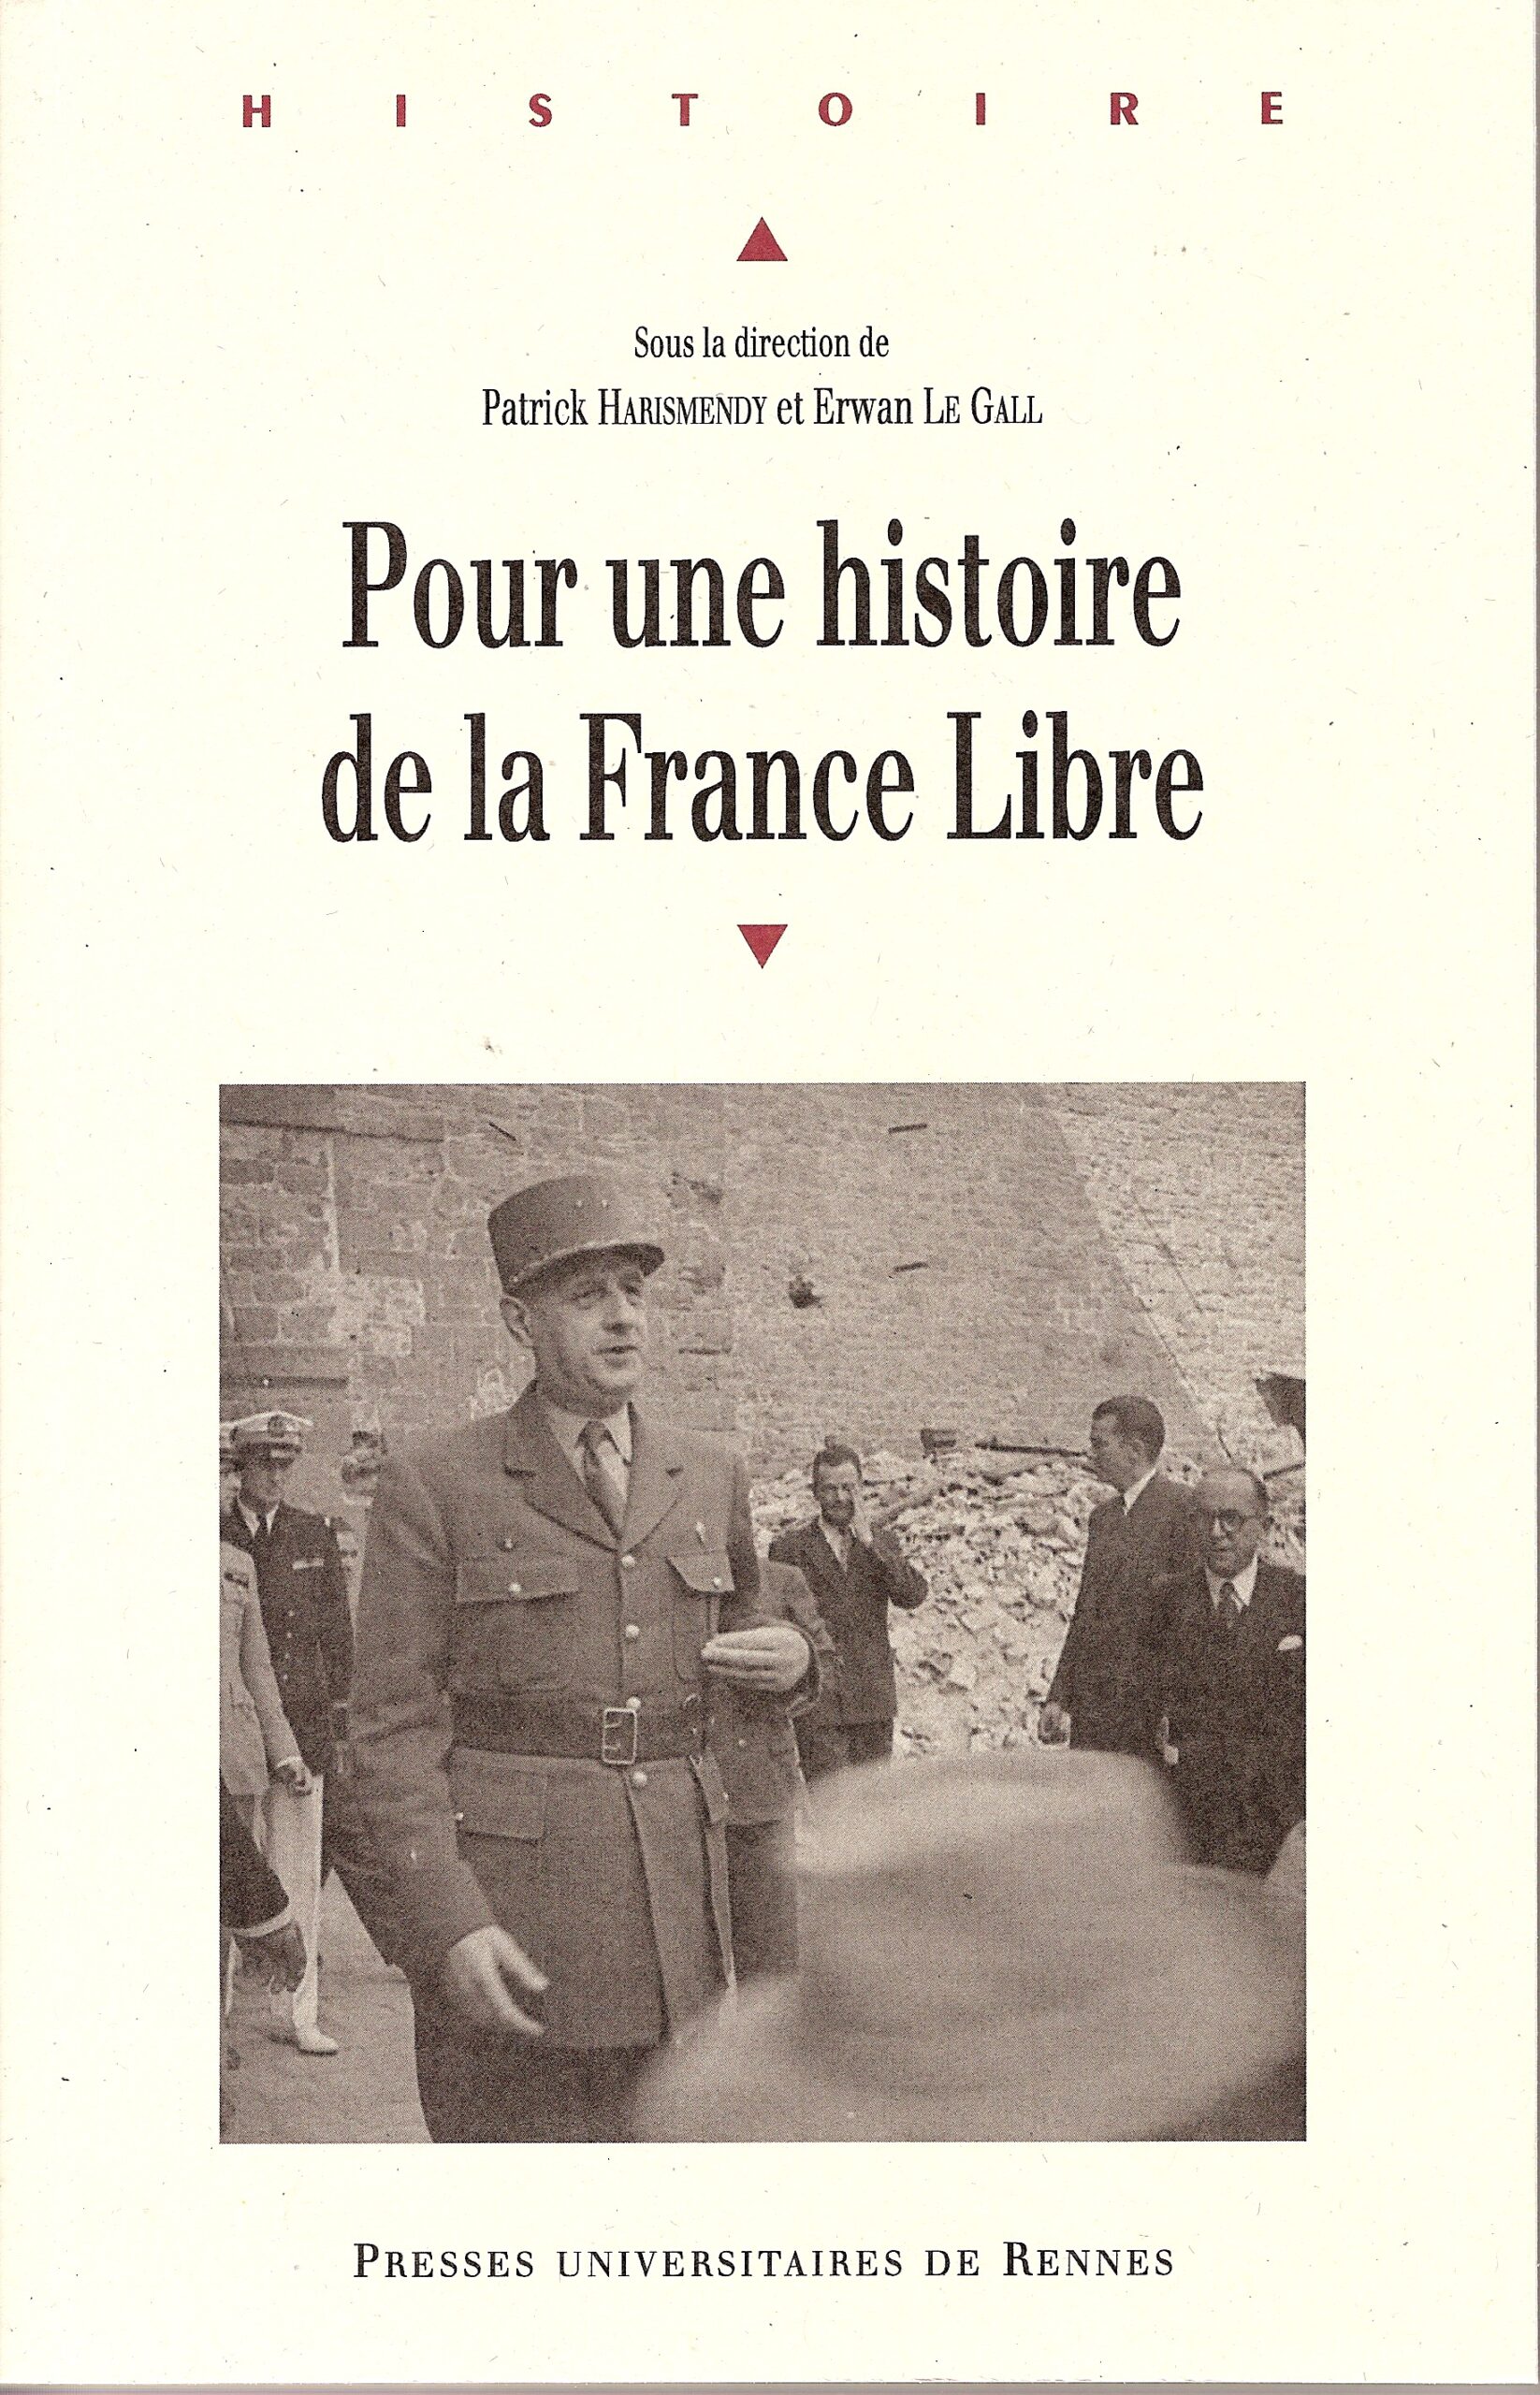 « Jalons pour une histoire de la France Libre » (colloque)